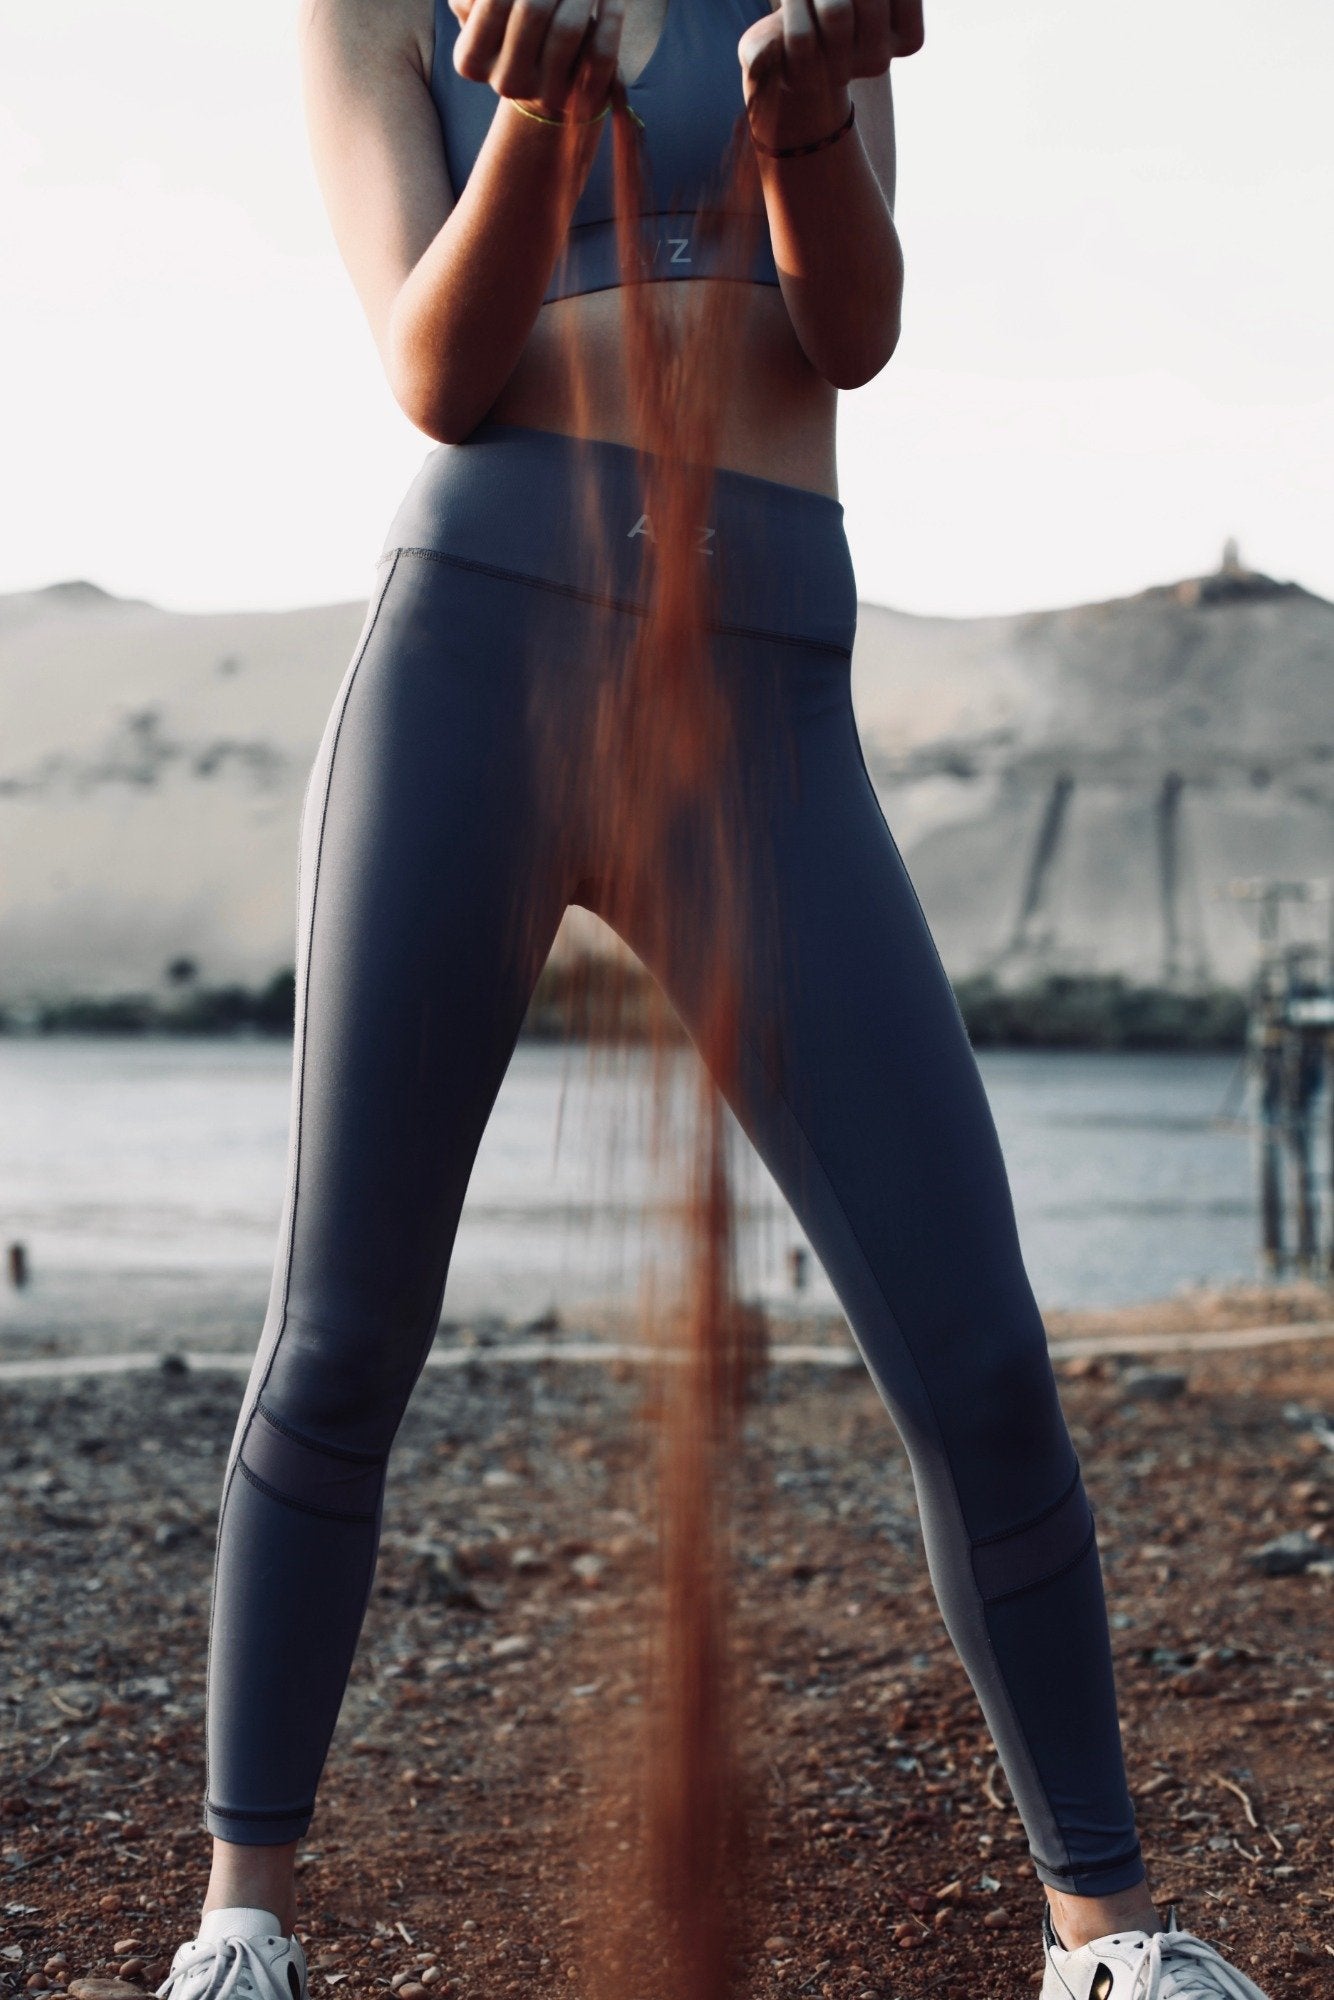 Collants running et leggings sport femme